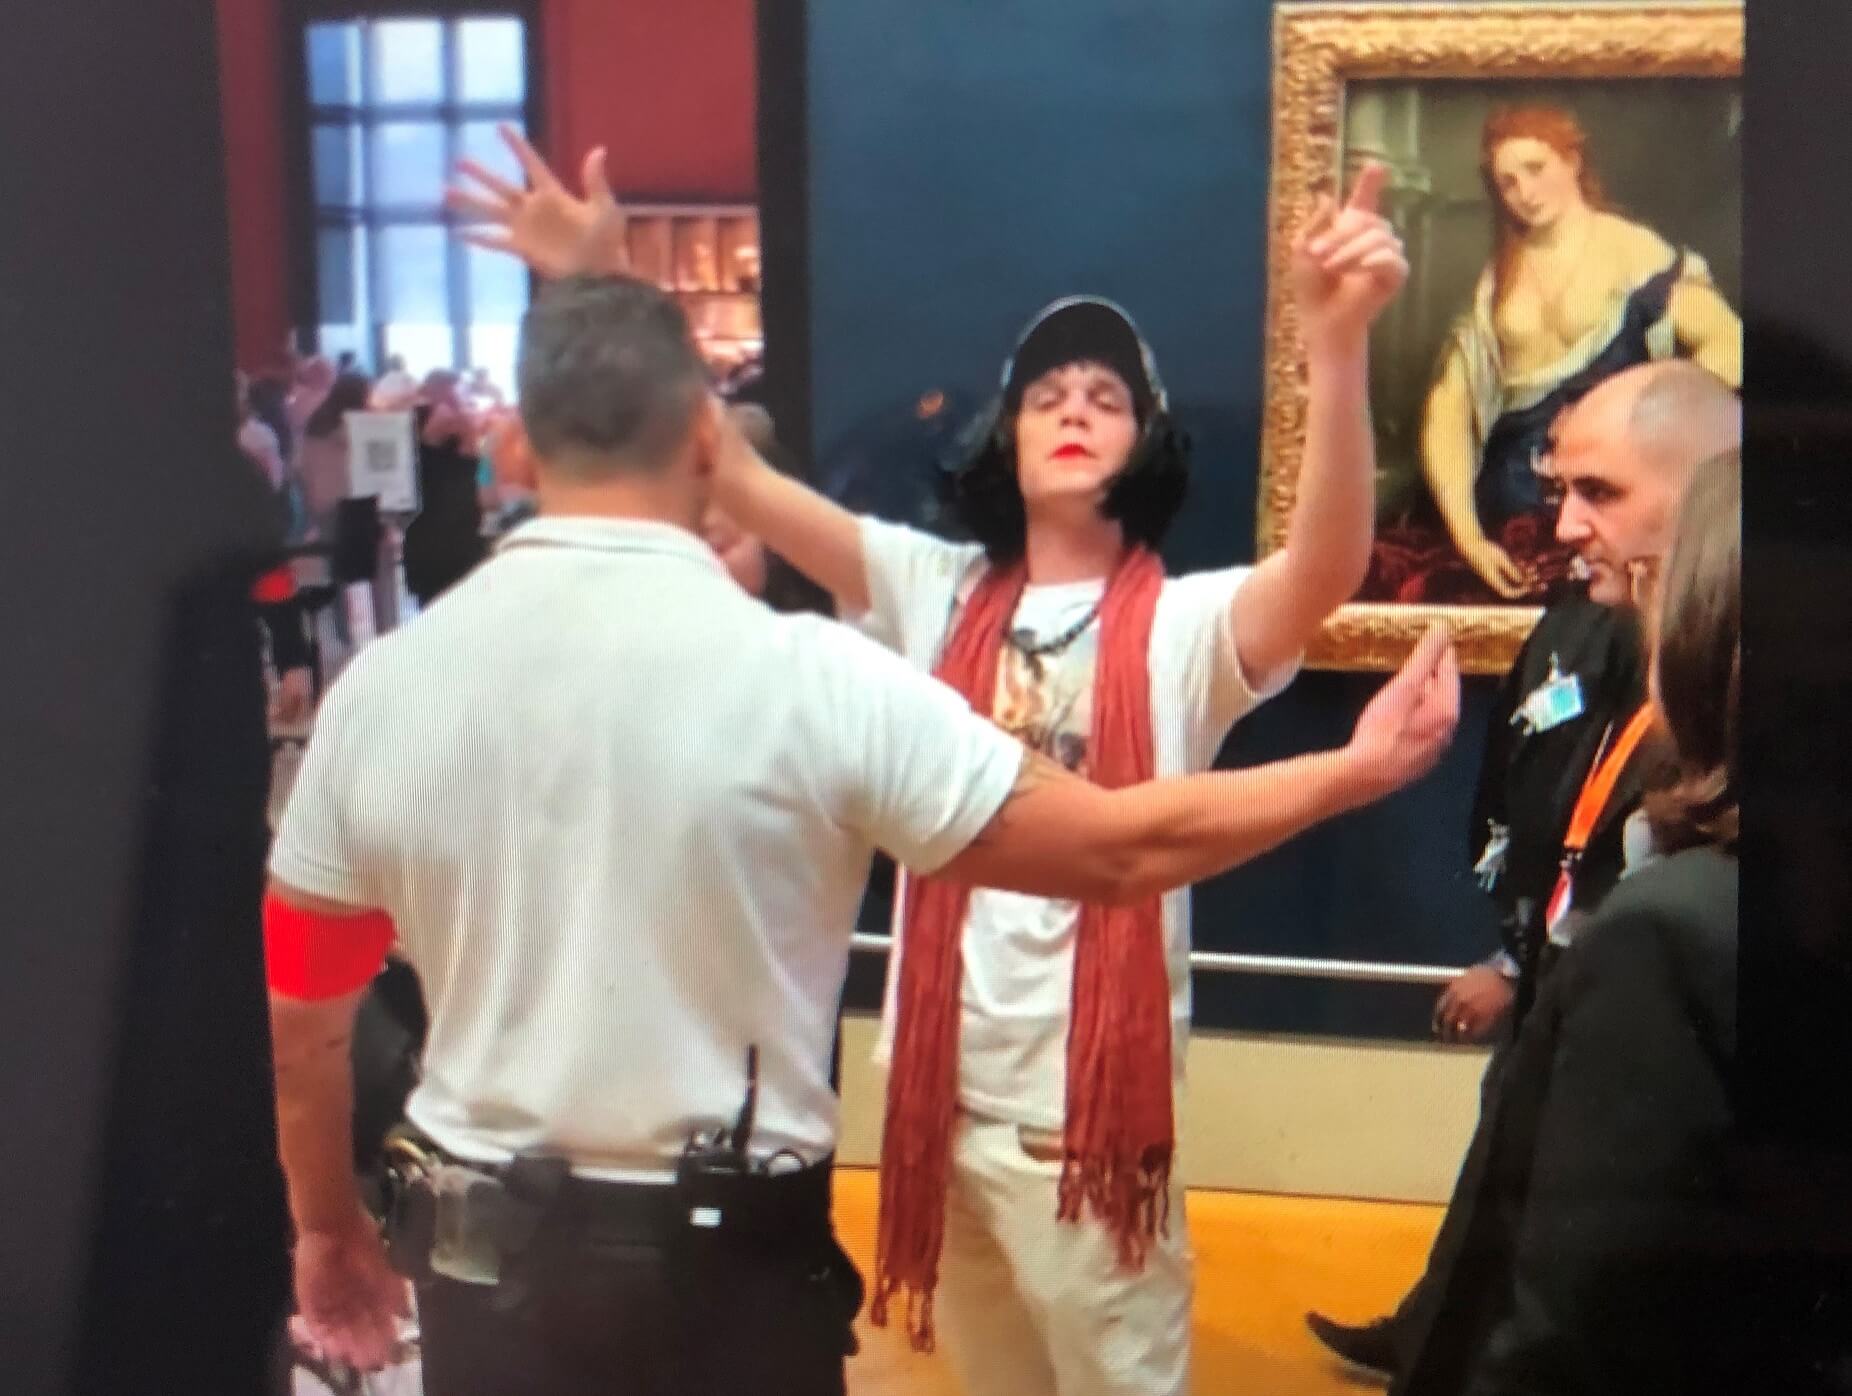 パリ最新情報「ルーブル美術館で『モナリザ』襲撃事件が起きる」